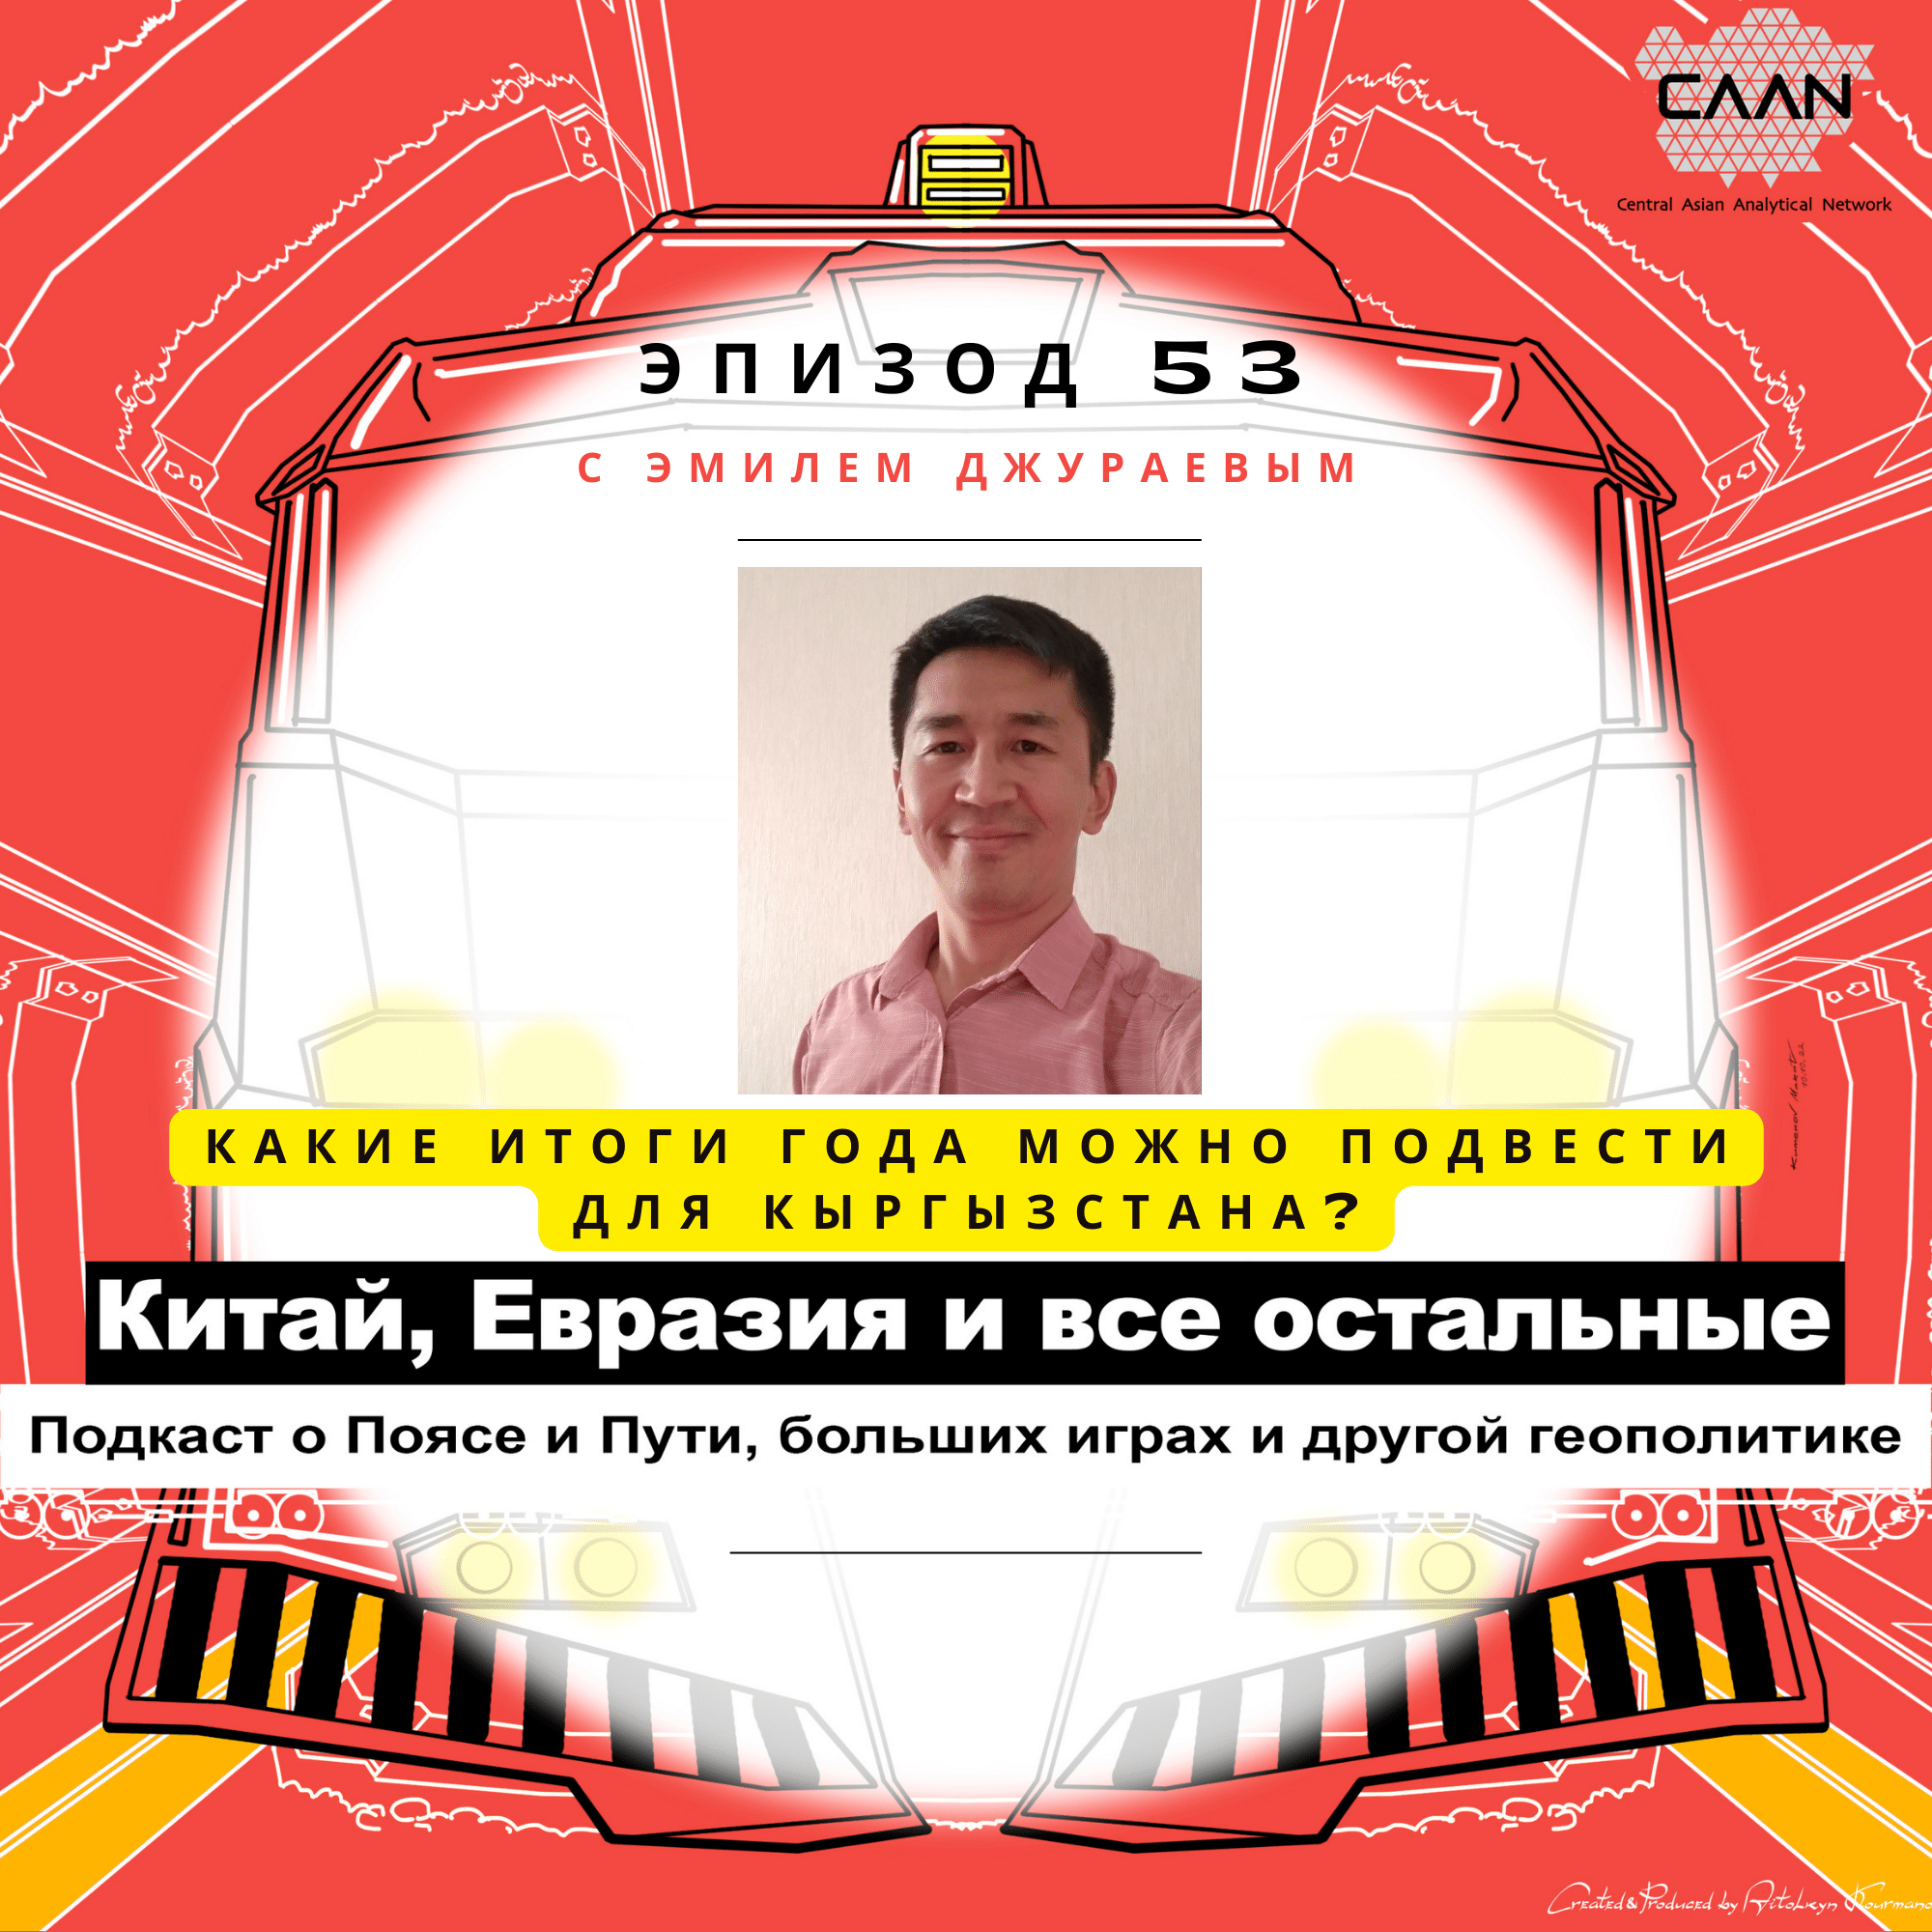 Эпизод 53 с Эмилем Джураевым. Какие итоги года можно подвести для Кыргызстана?